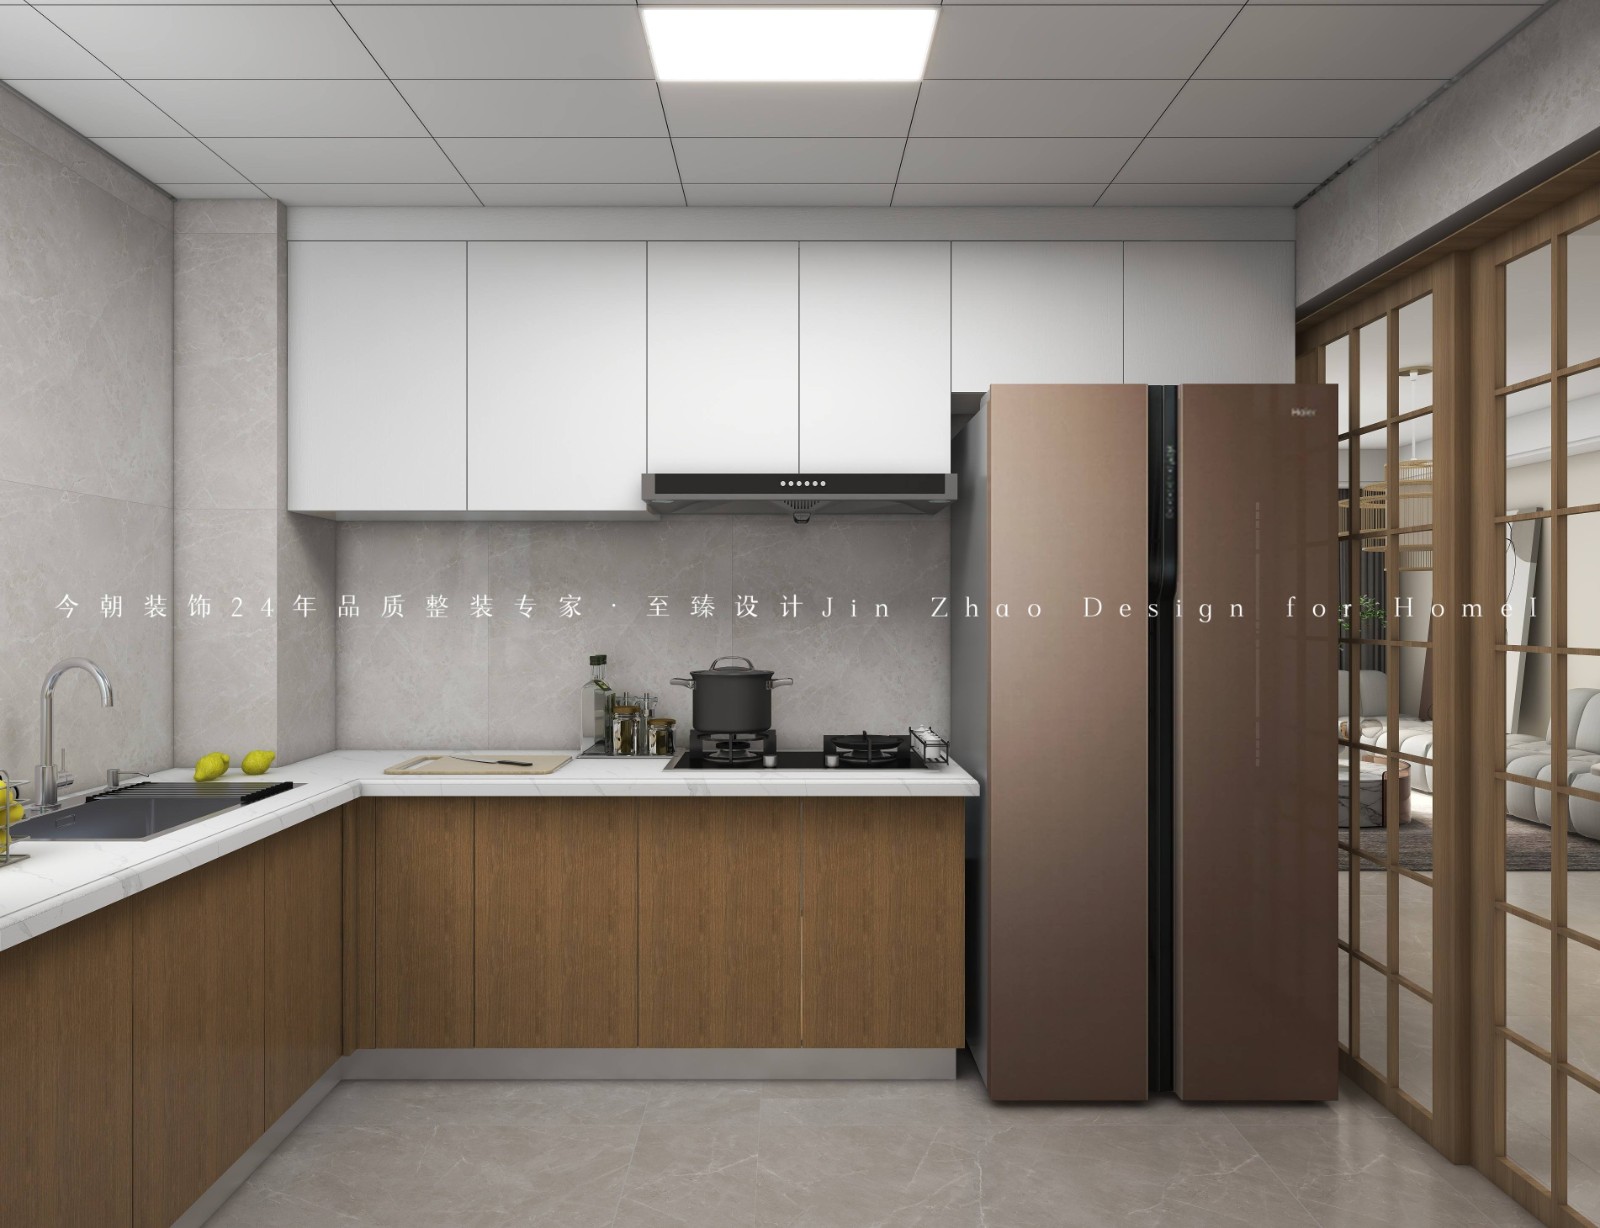 金麥加·和譽府現代簡約風格廚房裝修效果圖